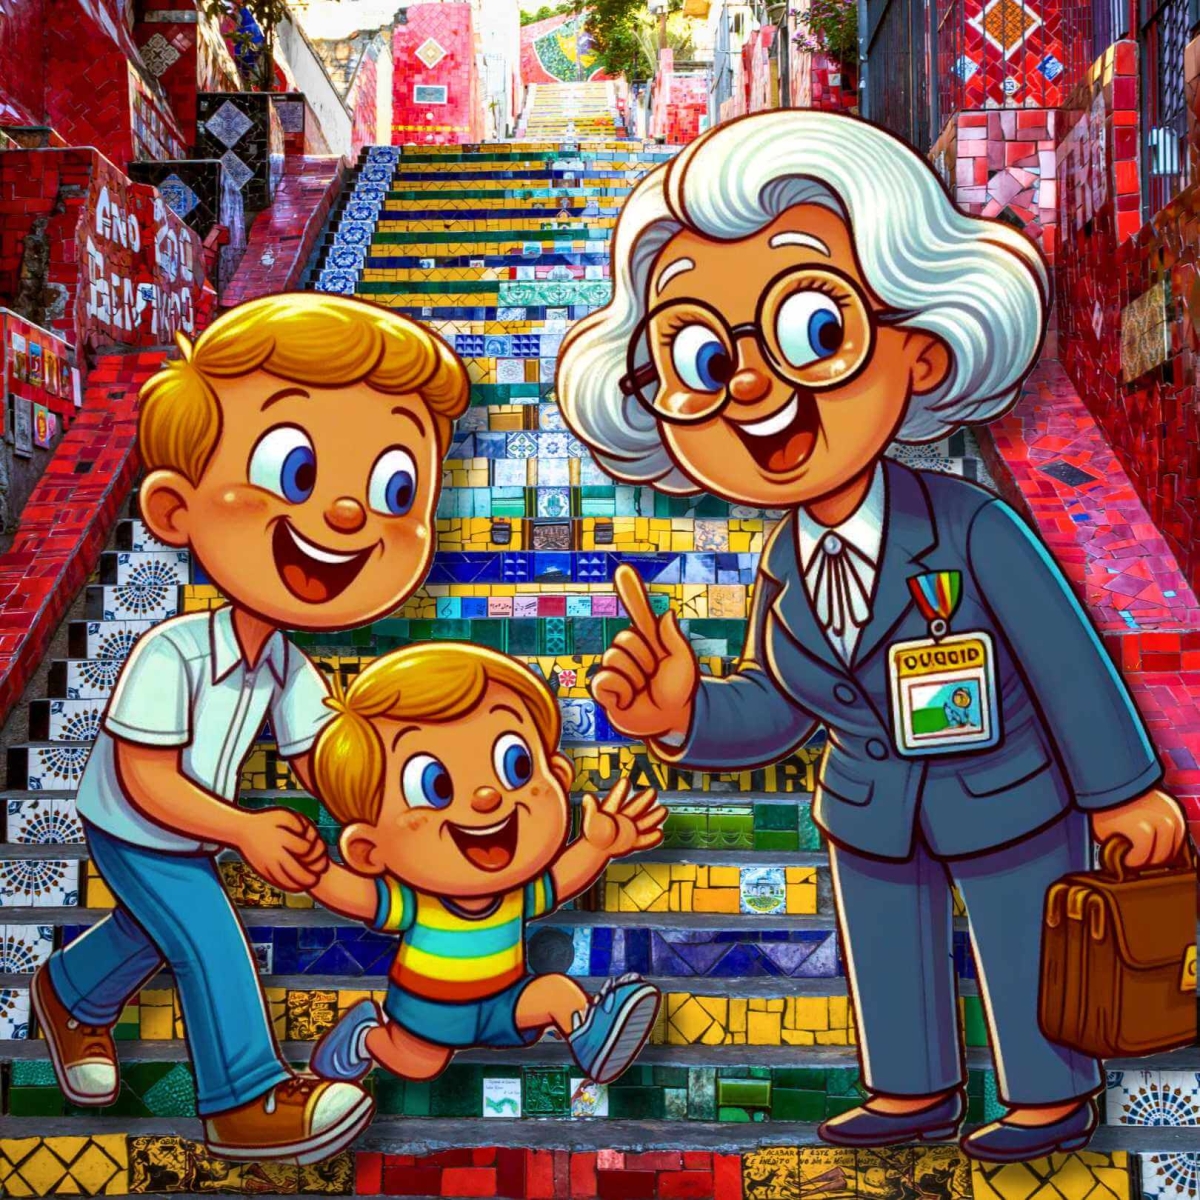  Родитель просит пожилого гида в Рио присмотреть за их ребенком, пока он совершает небольшую пешеходную экскурсию.​